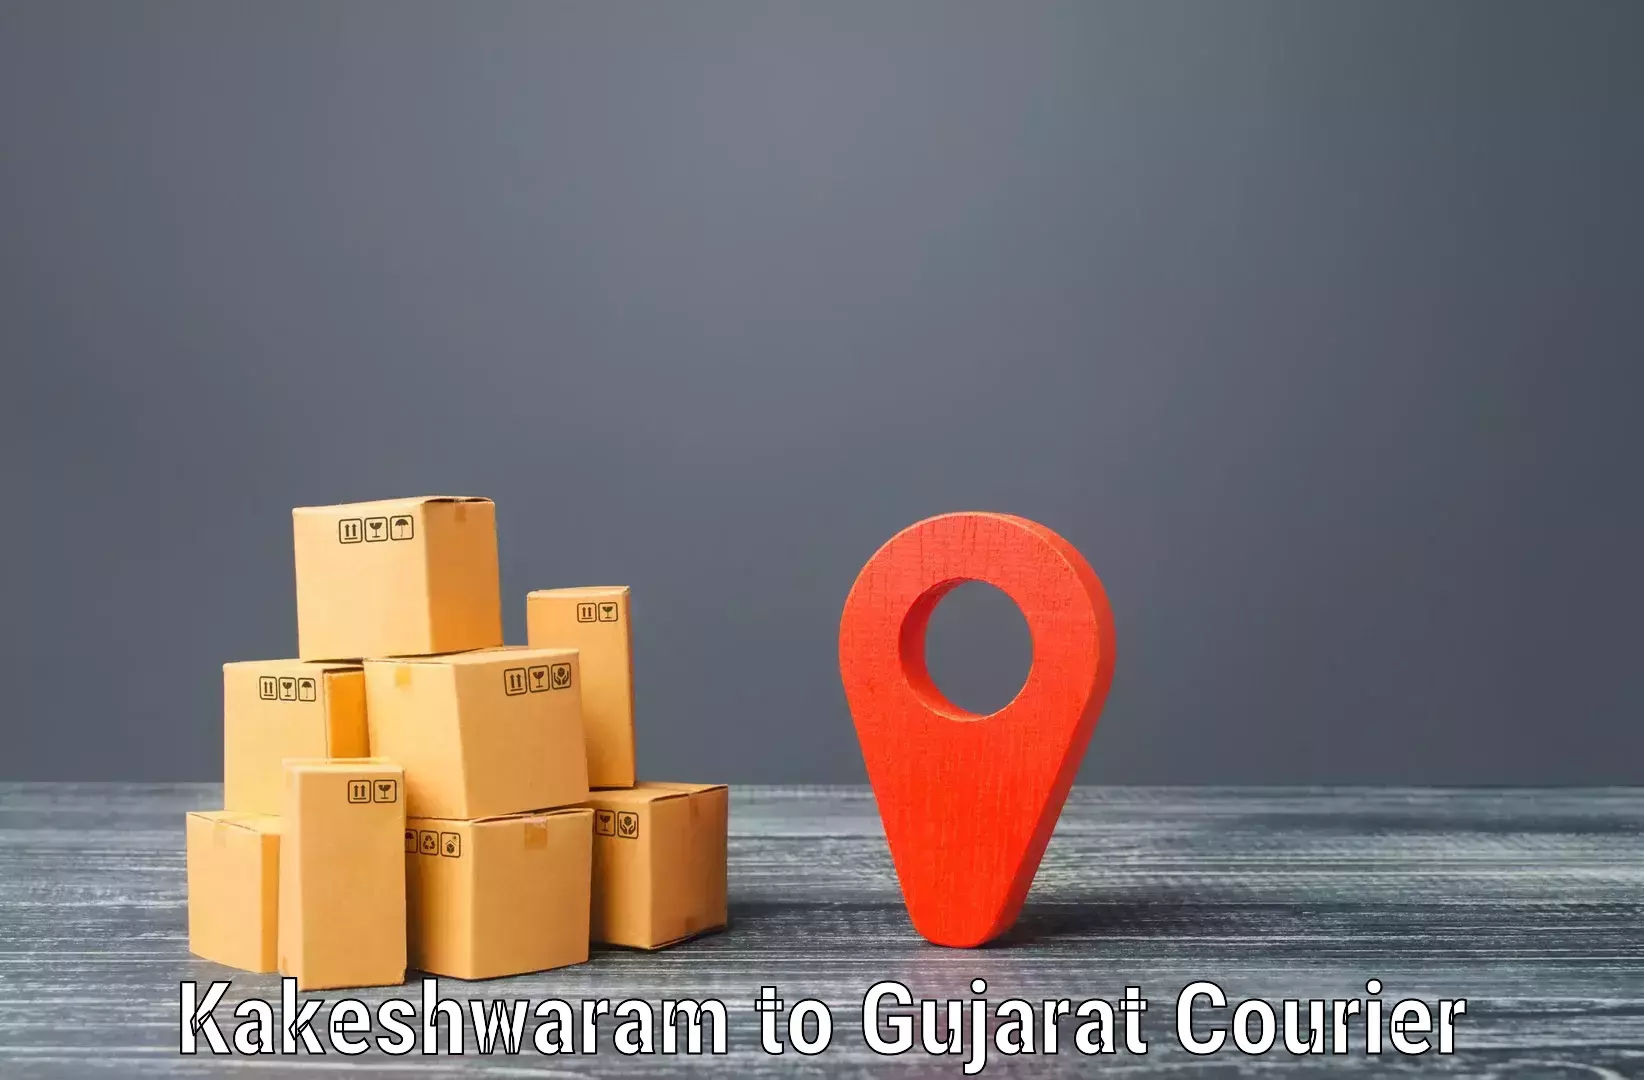 Modern courier technology in Kakeshwaram to Godhra